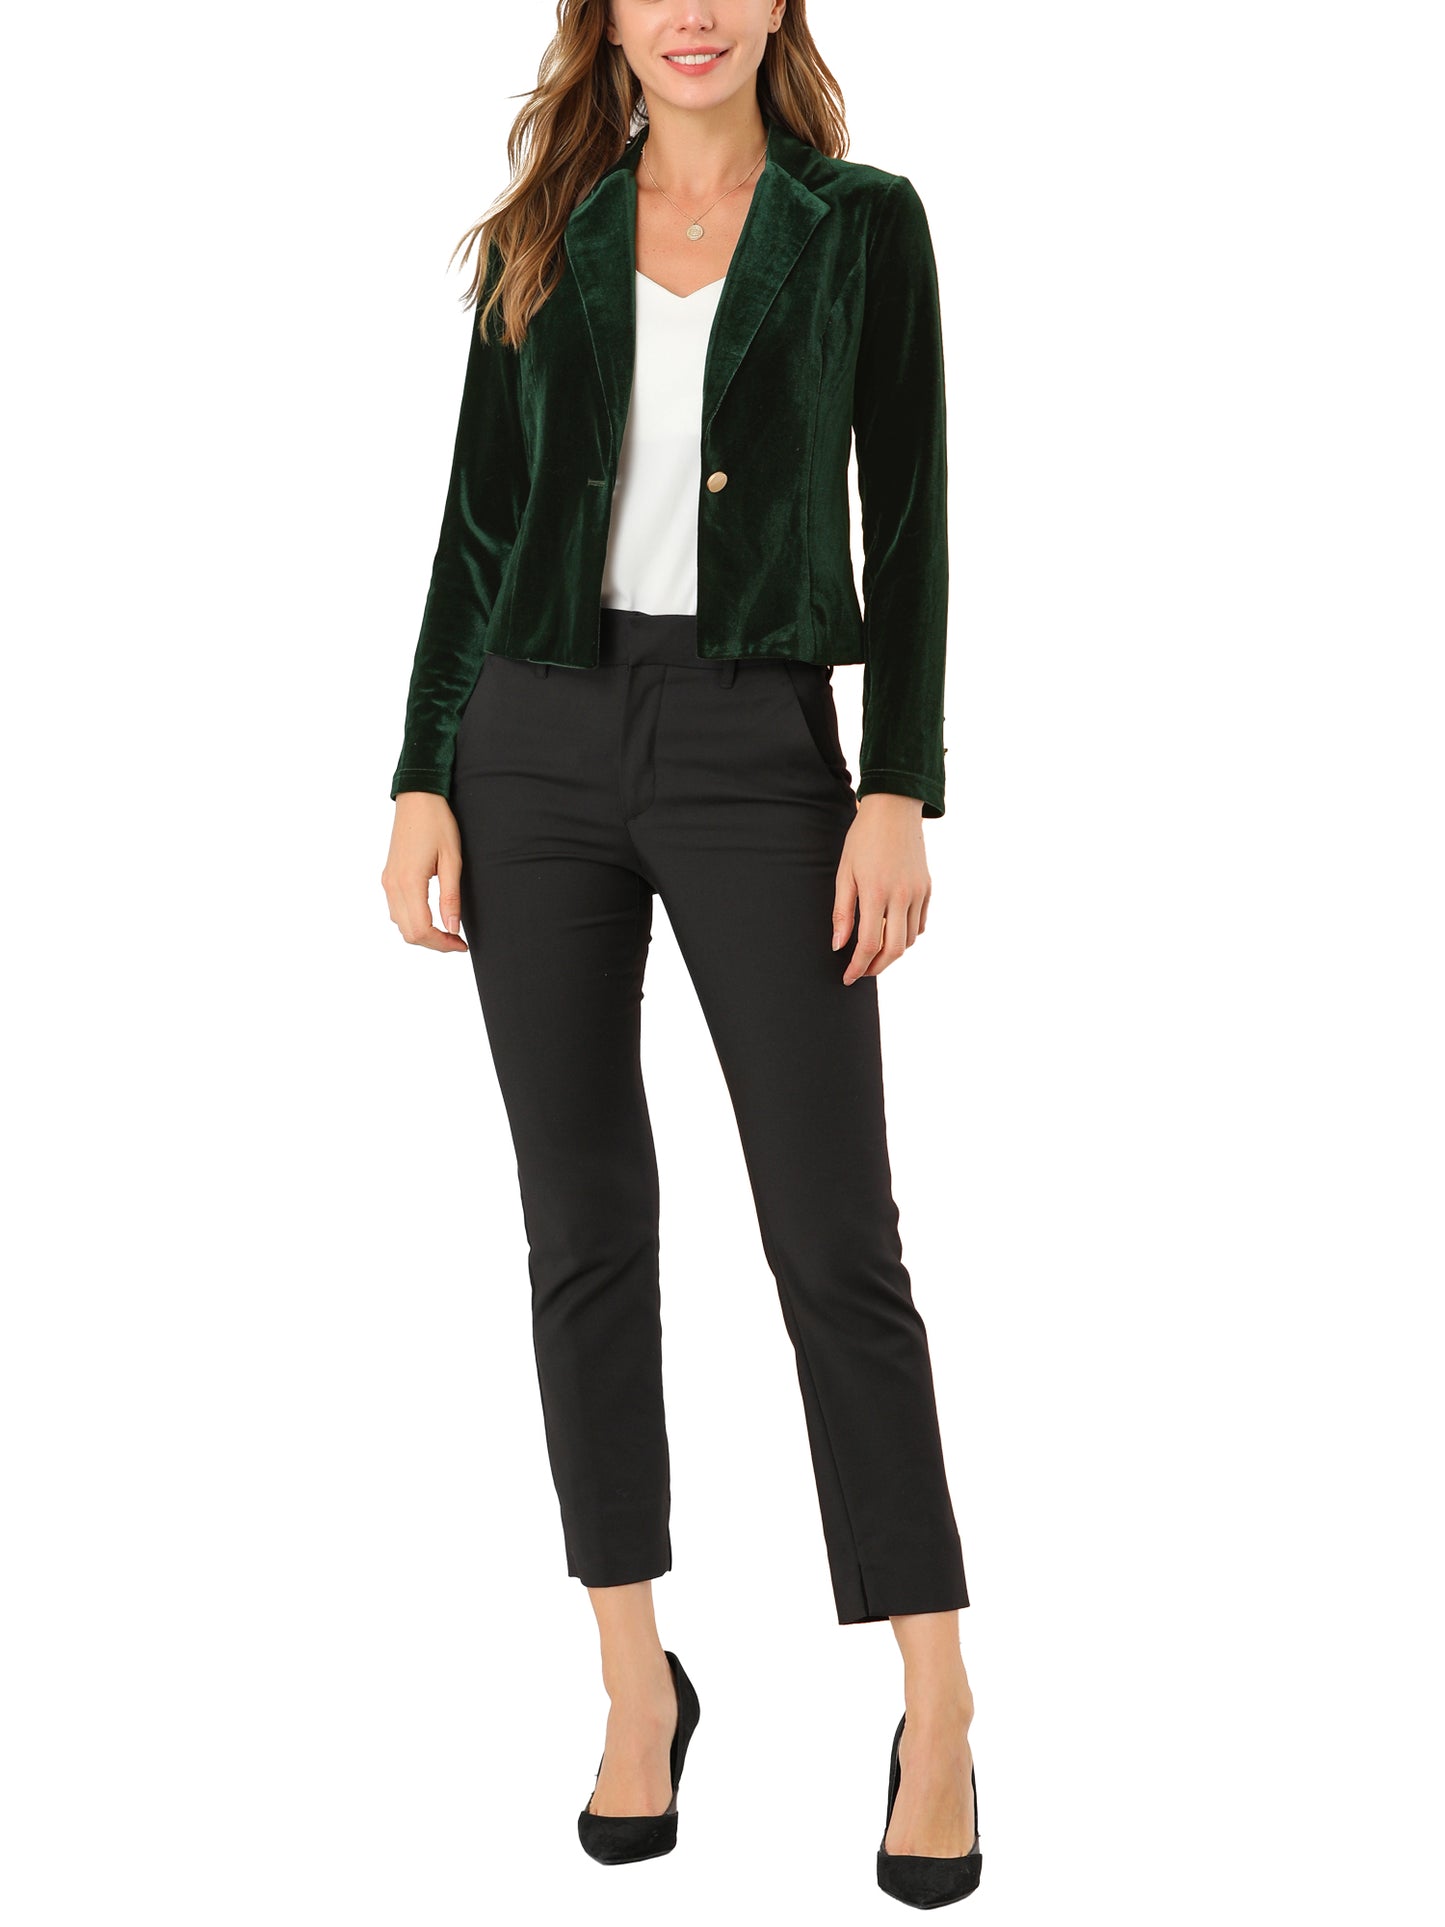 Unique Bargains Women's Button Front Velvet Blazer Lapel Work Office Crop Suit Jacket